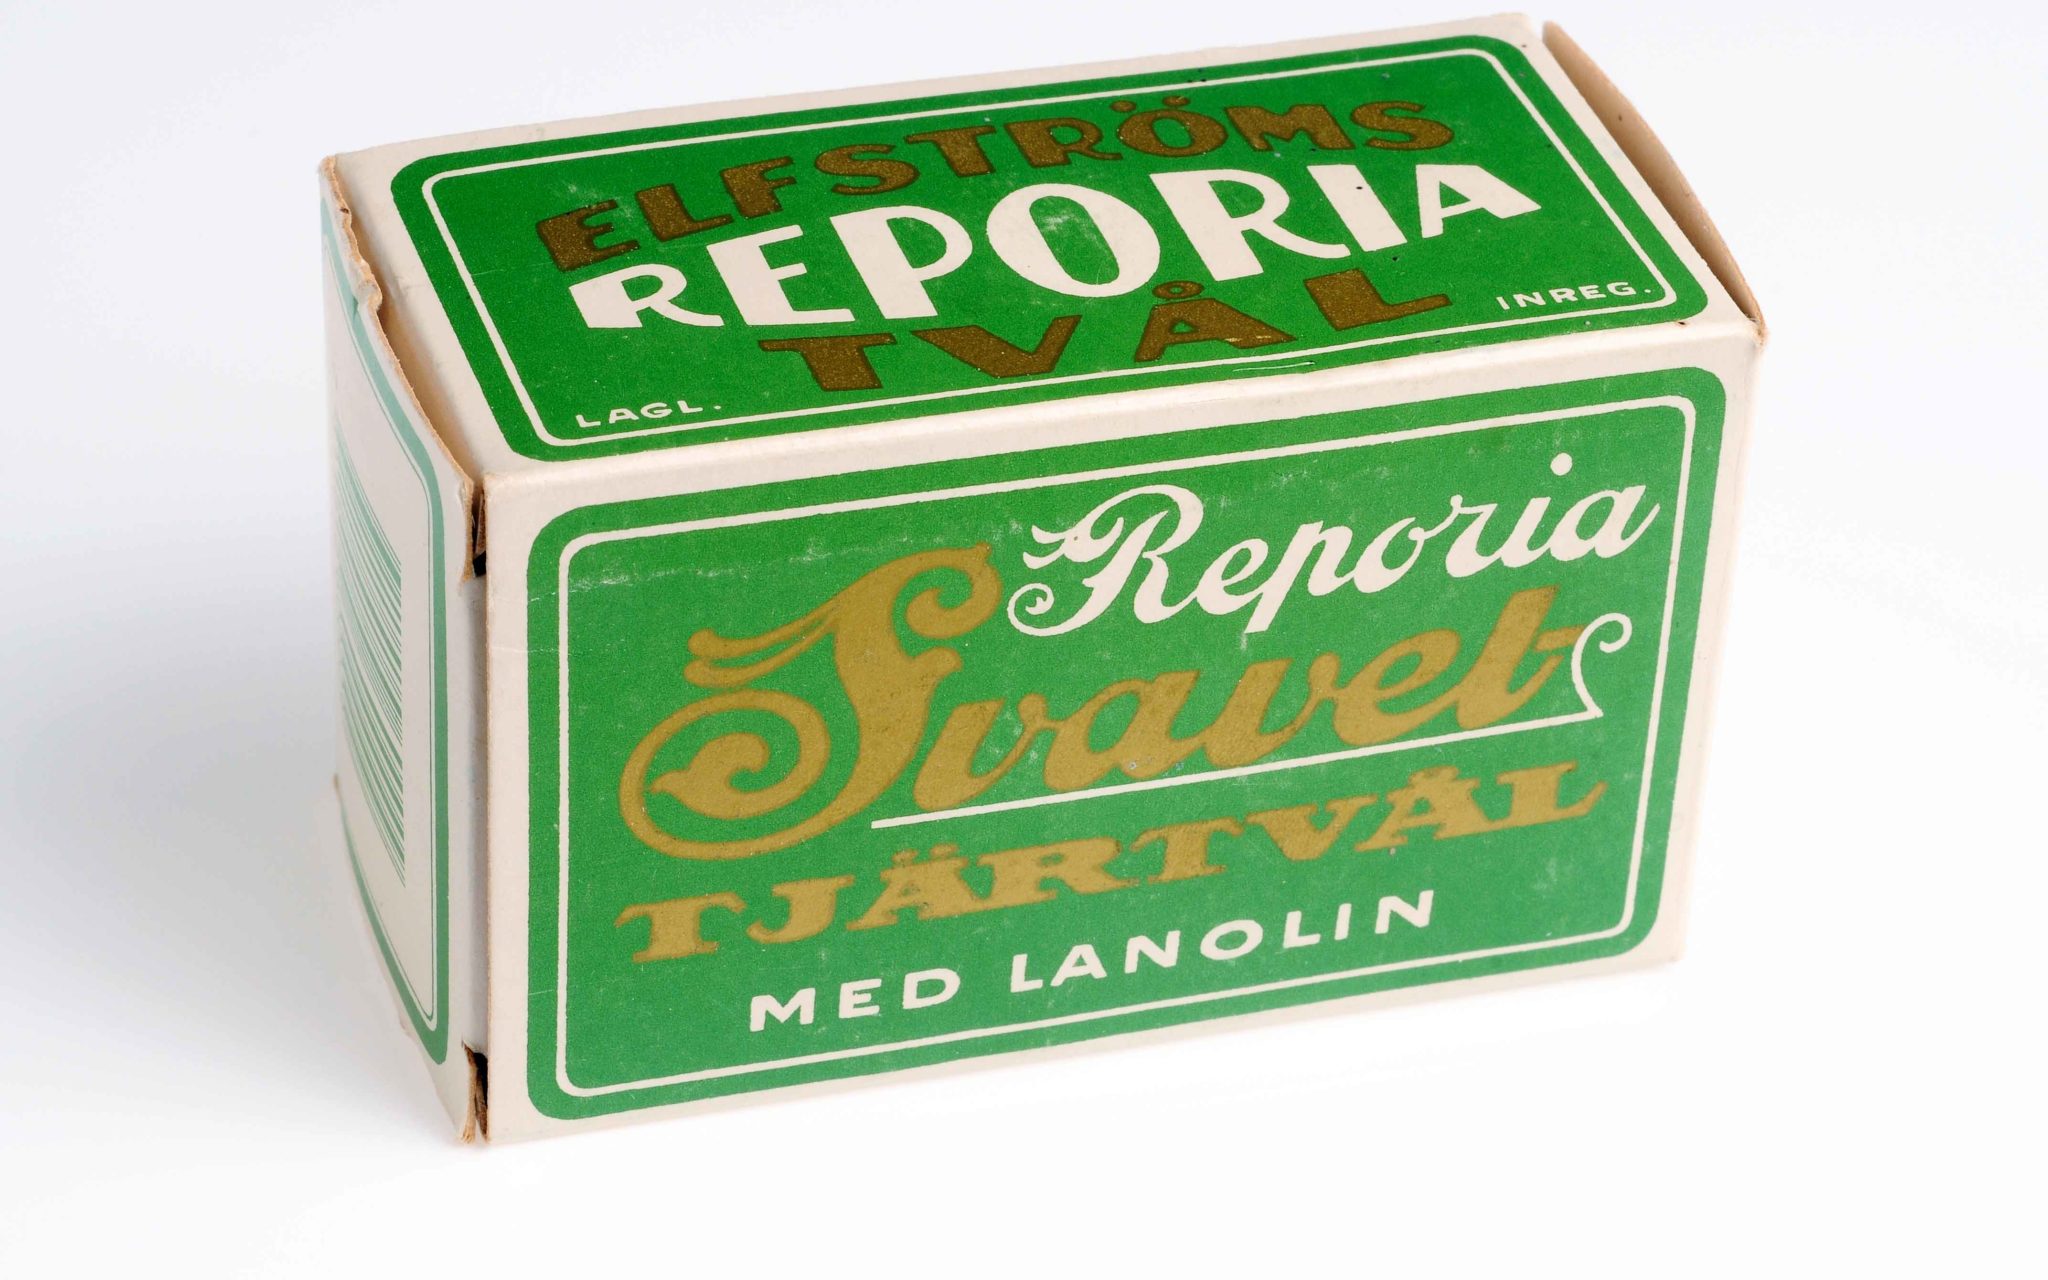 Förpackning: Elfströms Reporia tvål